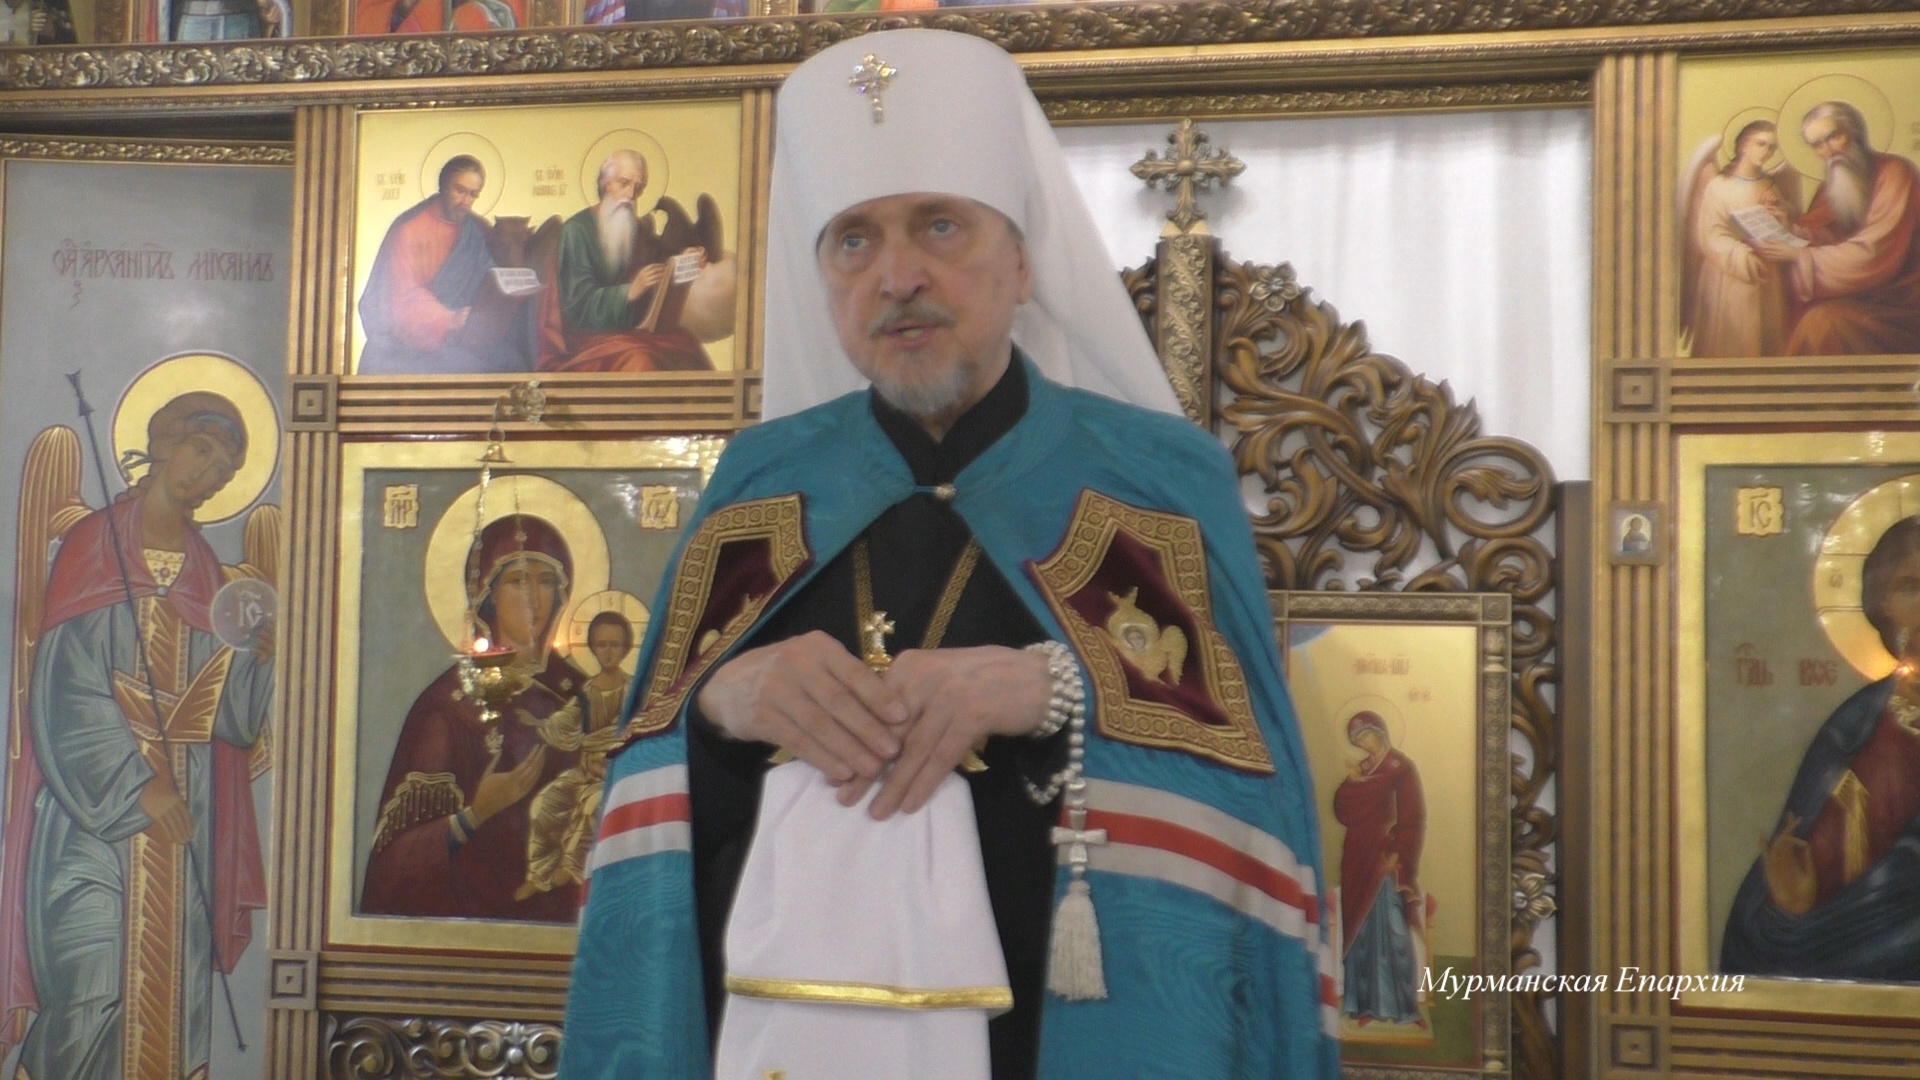 О покровительстве Богородицы русской царской семье